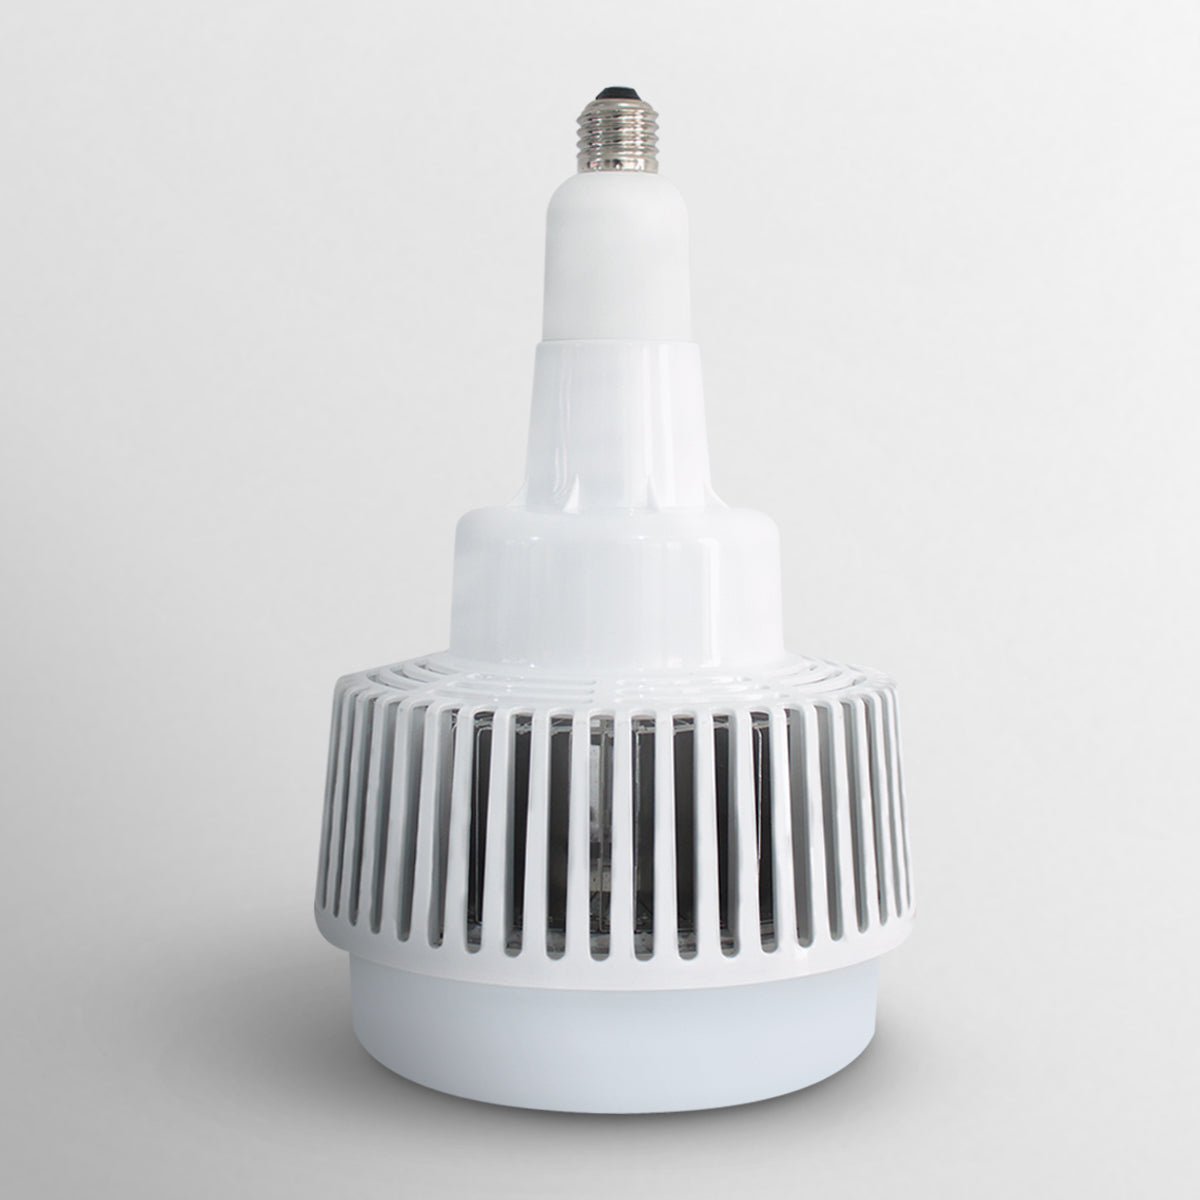 Pack de 2 Lámparas Industriales 50w equivalente a 312 W | Luz blanca fría